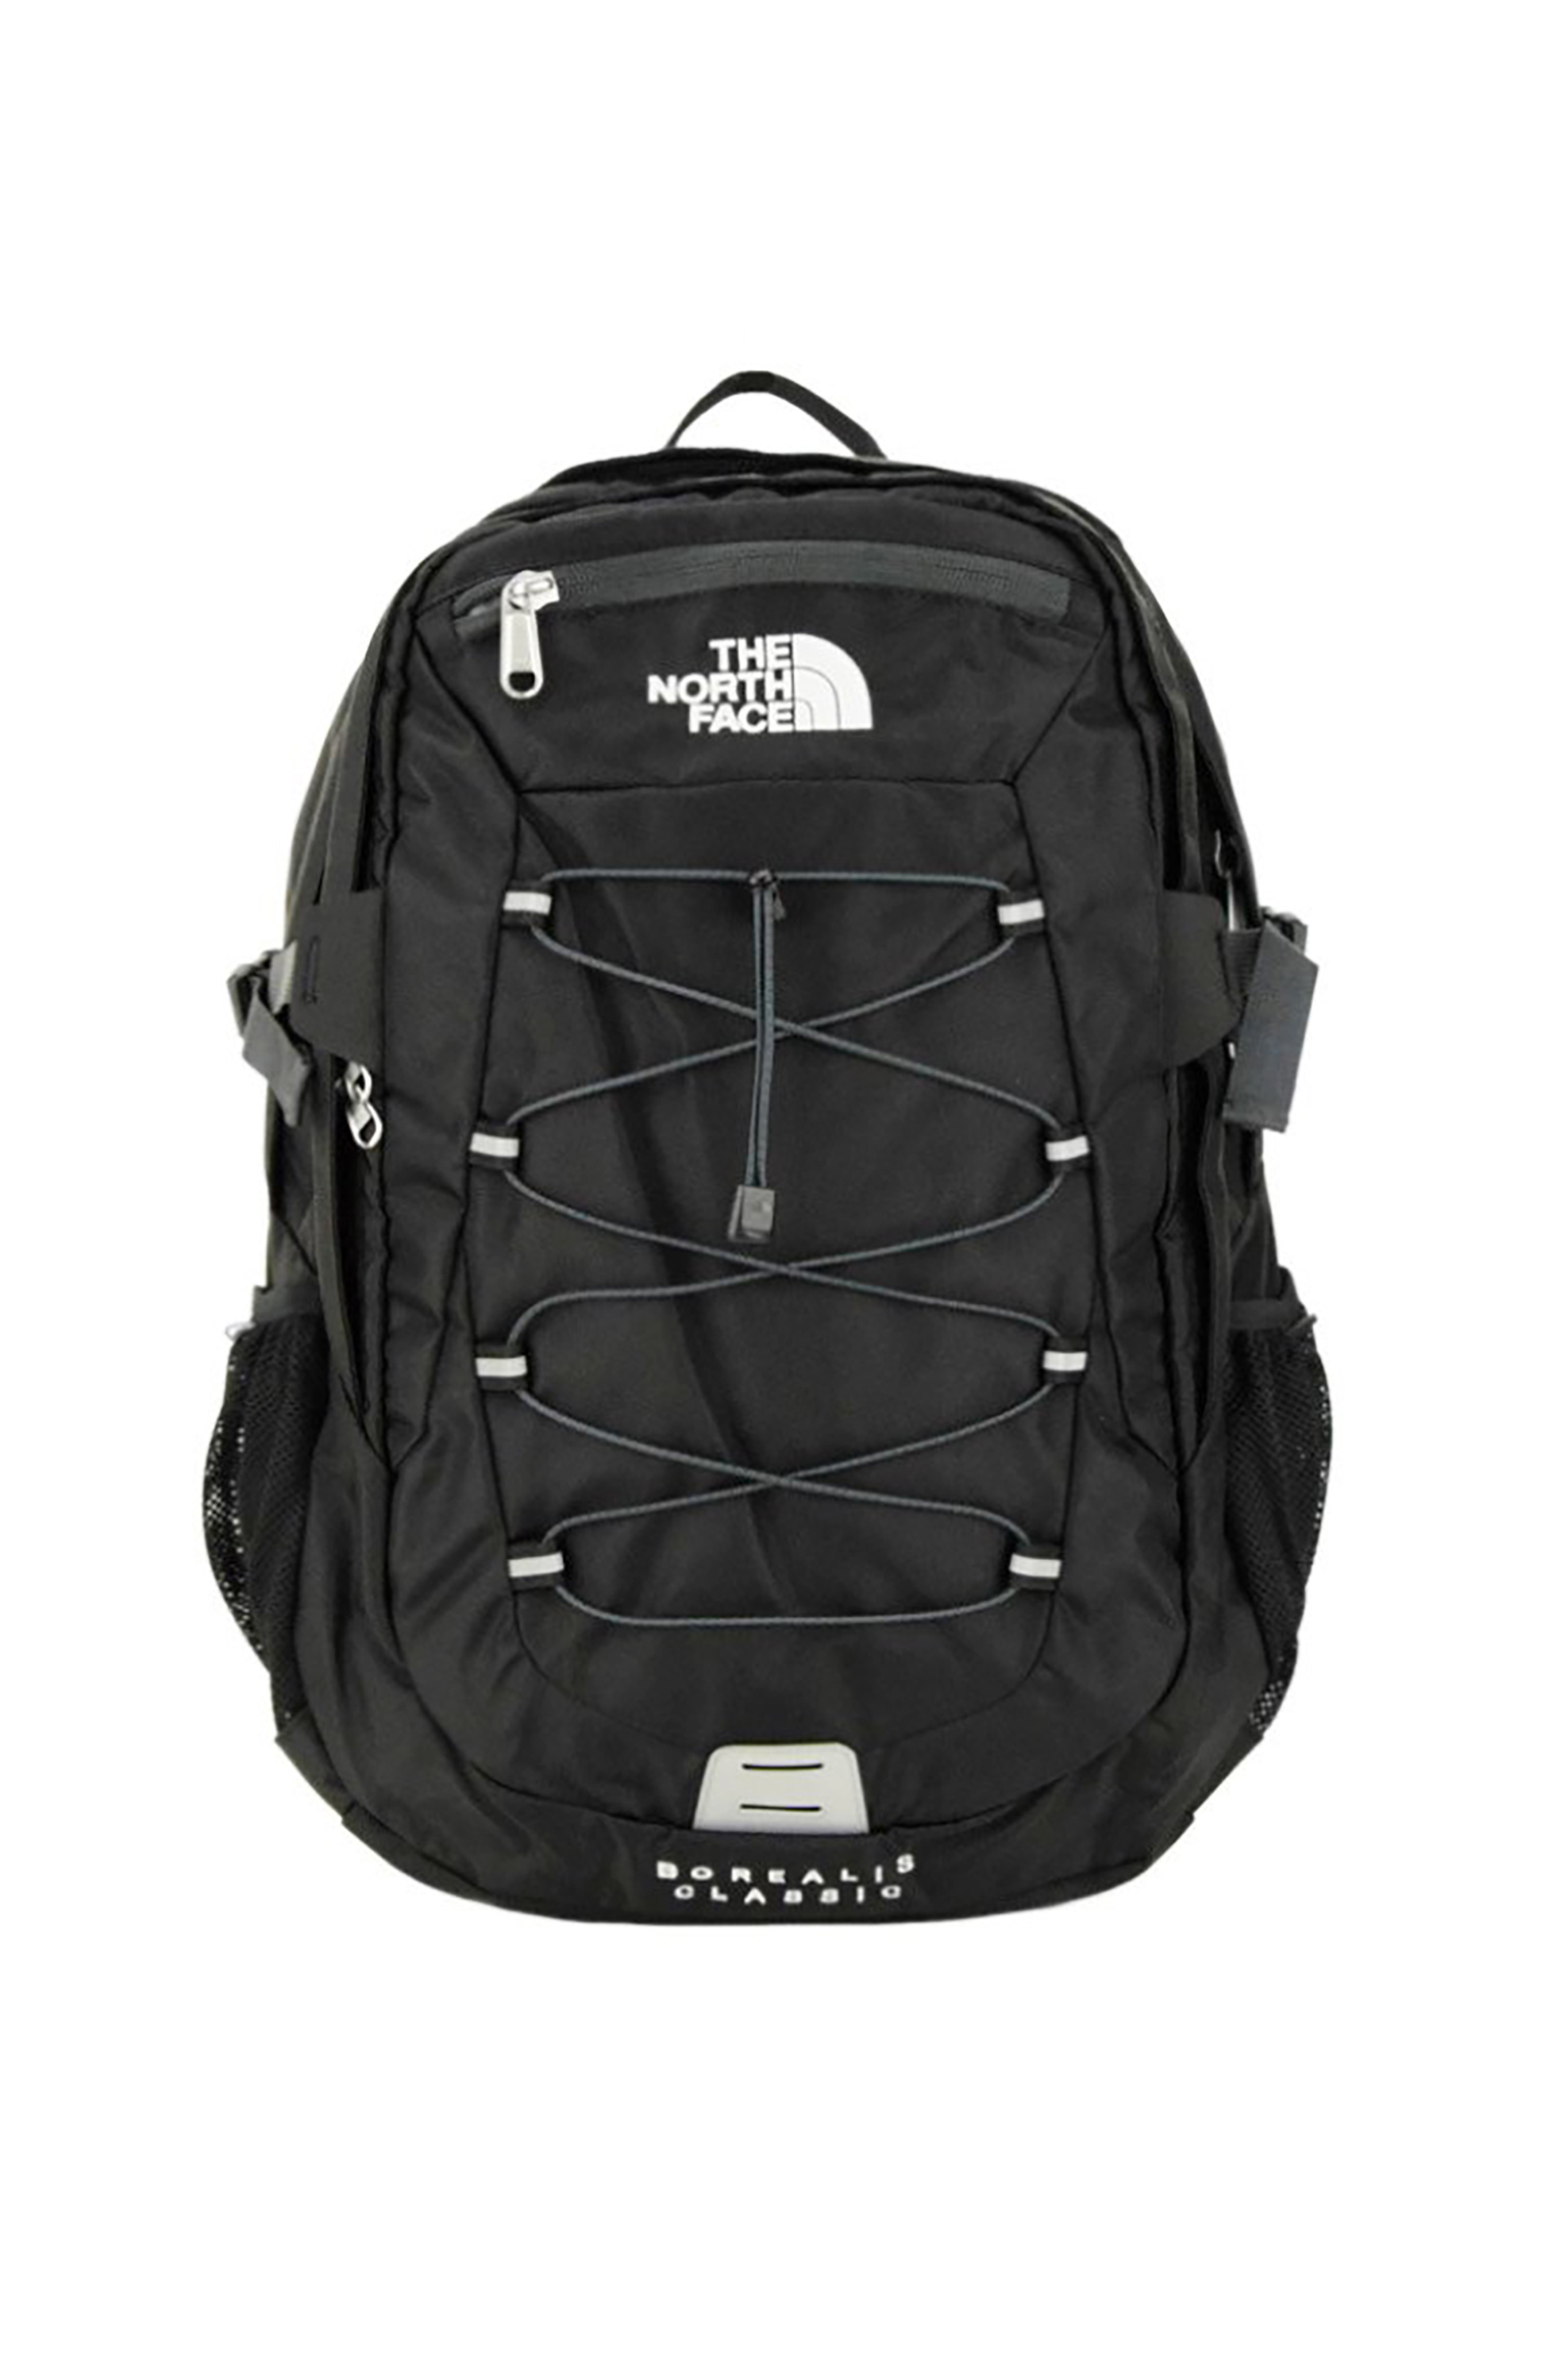 Ανδρική Μόδα > Ανδρικές Τσάντες > Ανδρικά Σακίδια & Backpacks The North Face unisex backpack "Borealis Classic" - NF00CF9CKT01 Μαύρο